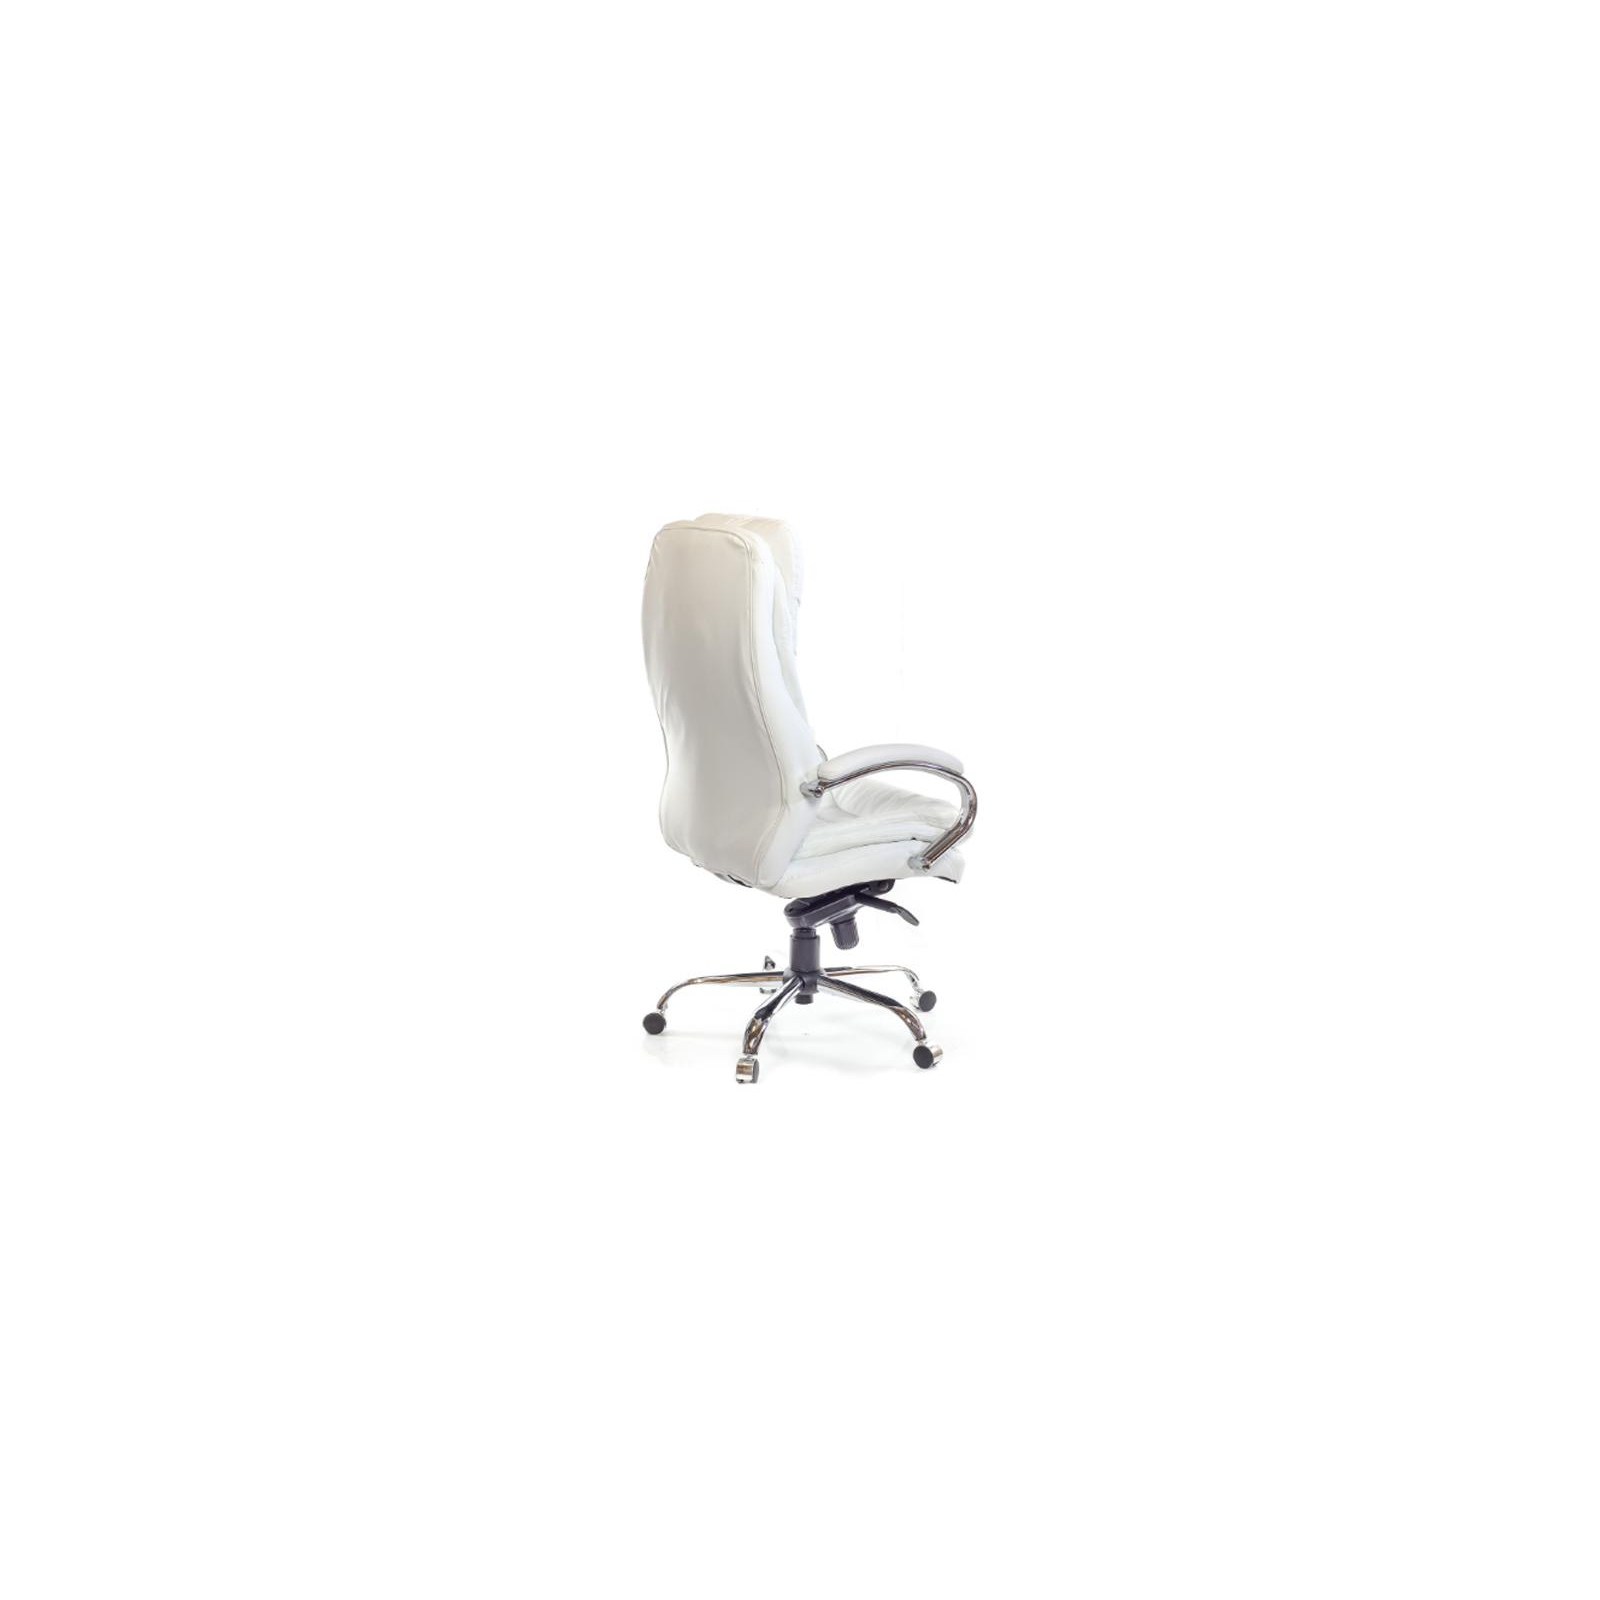 Офисное кресло Аклас Валенсия Soft CH MB Коричневое (07393) изображение 5